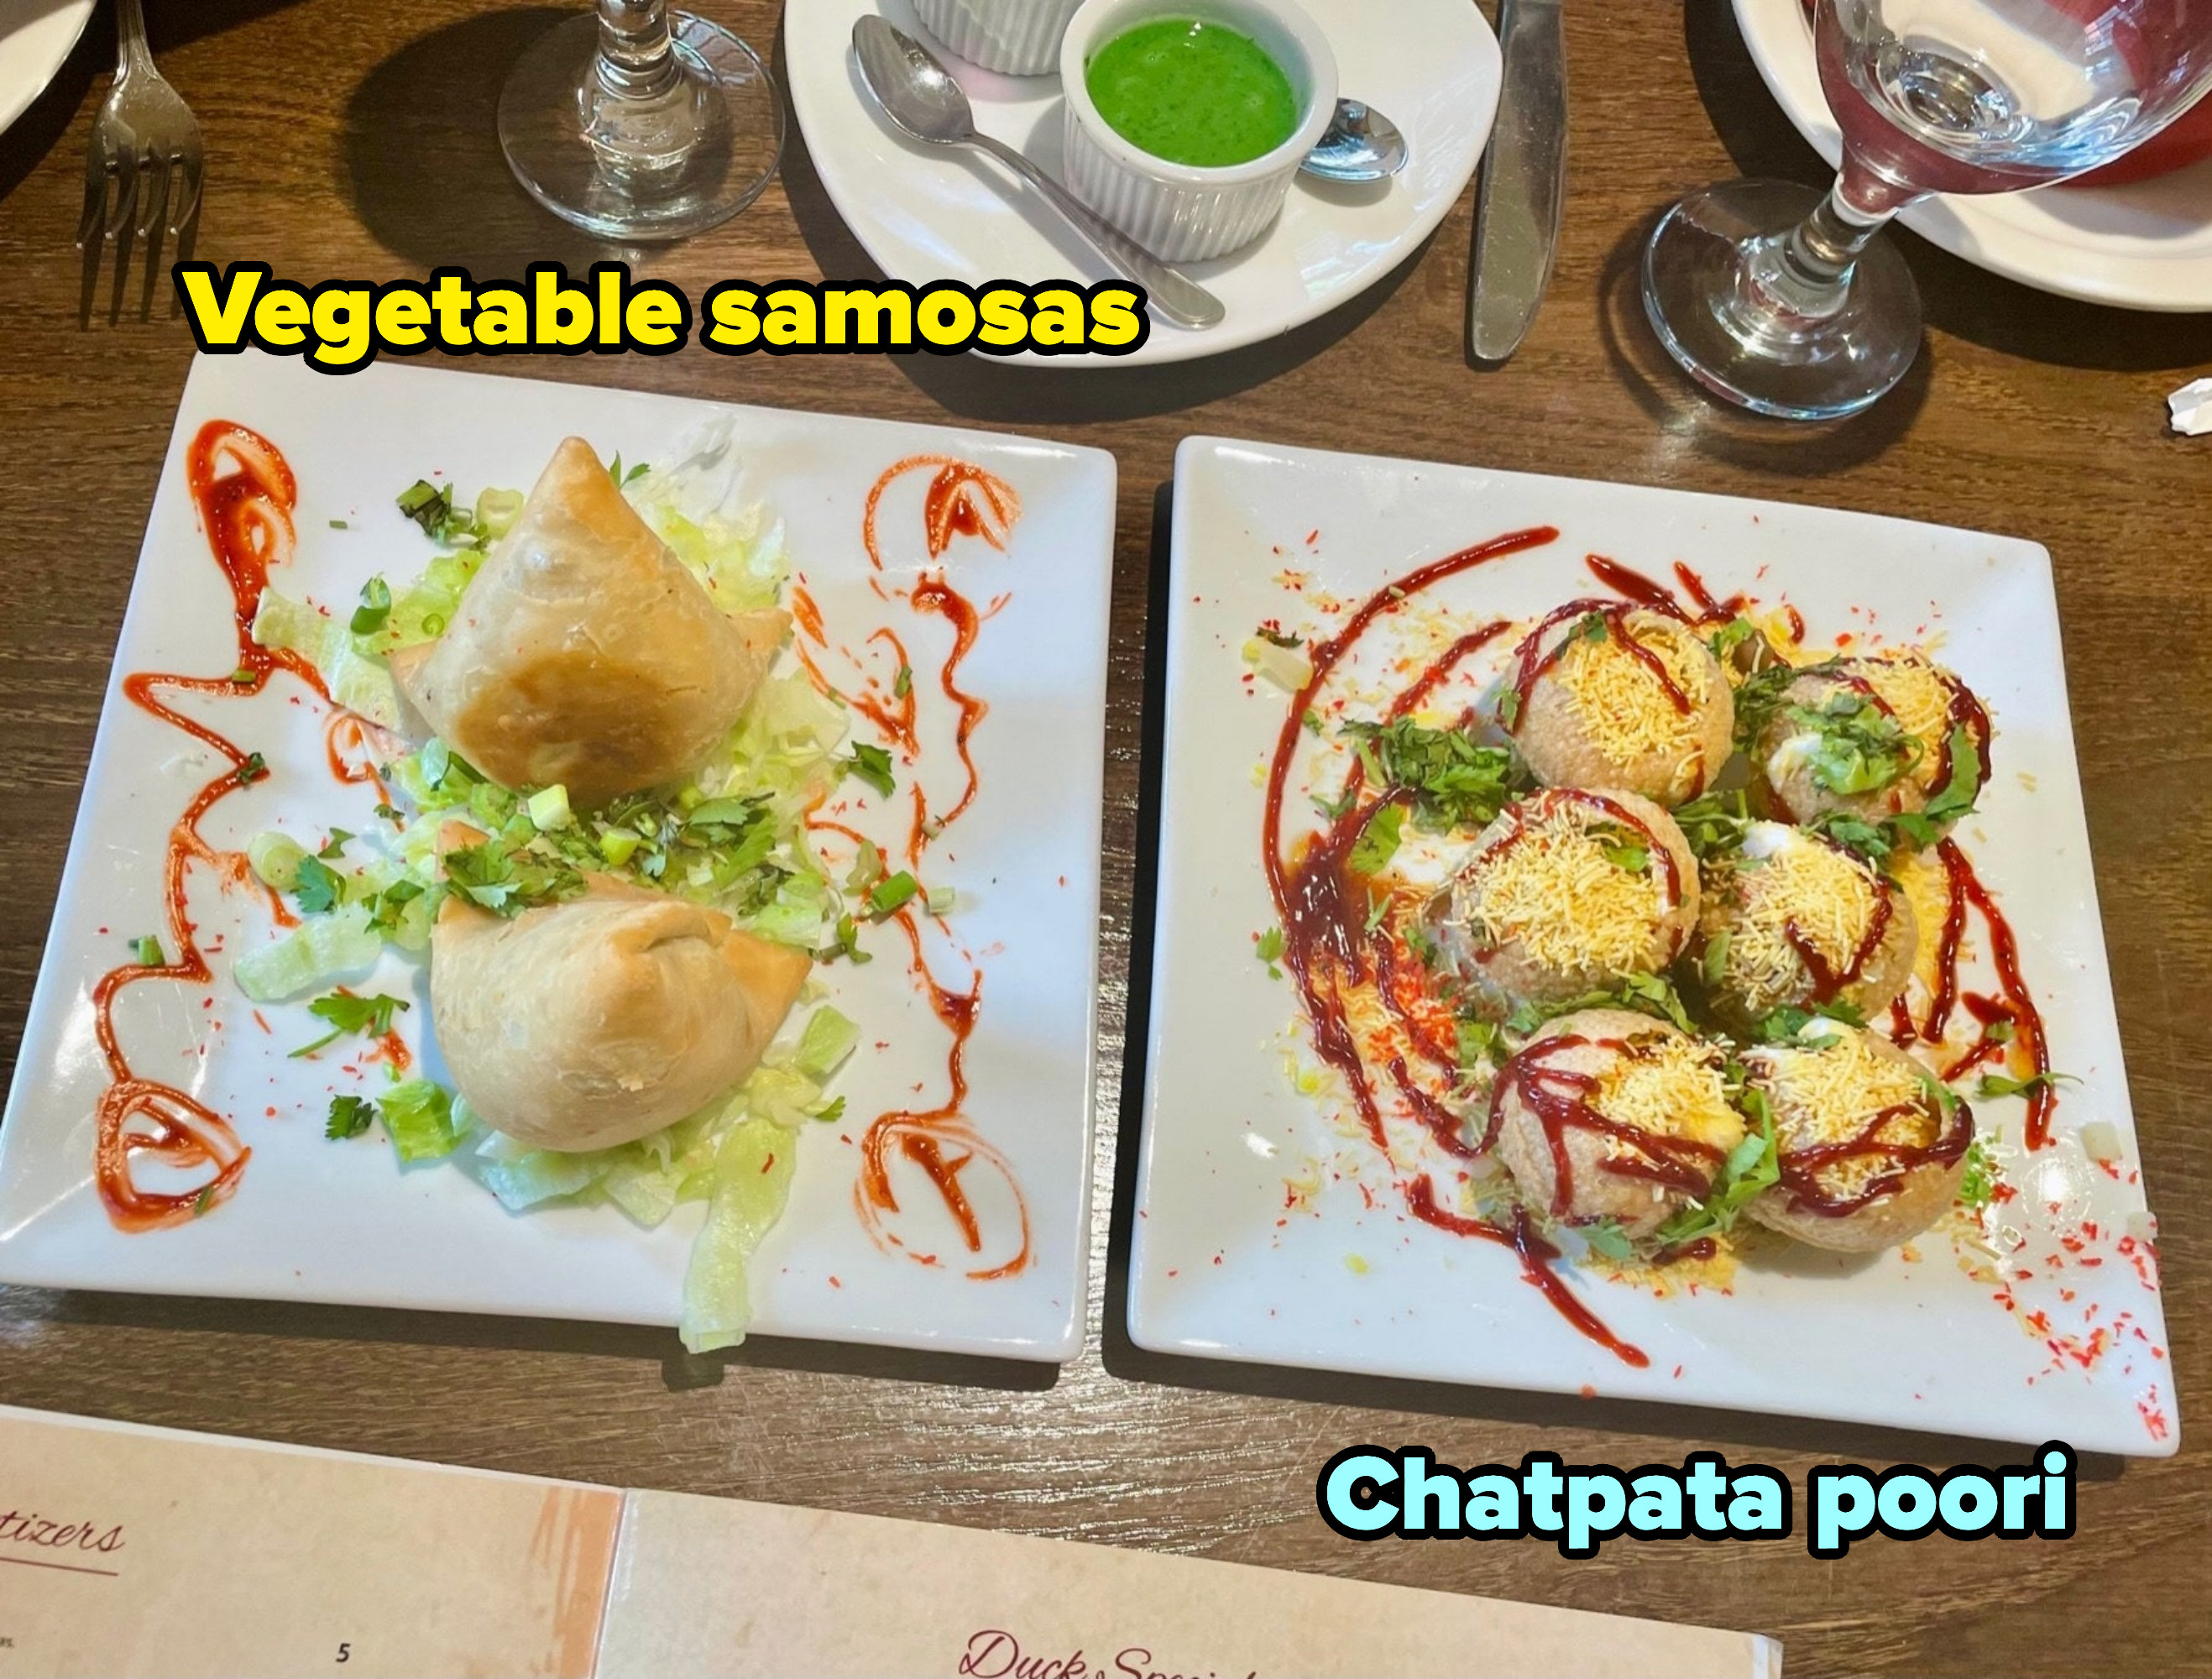 samosas, poori on the table